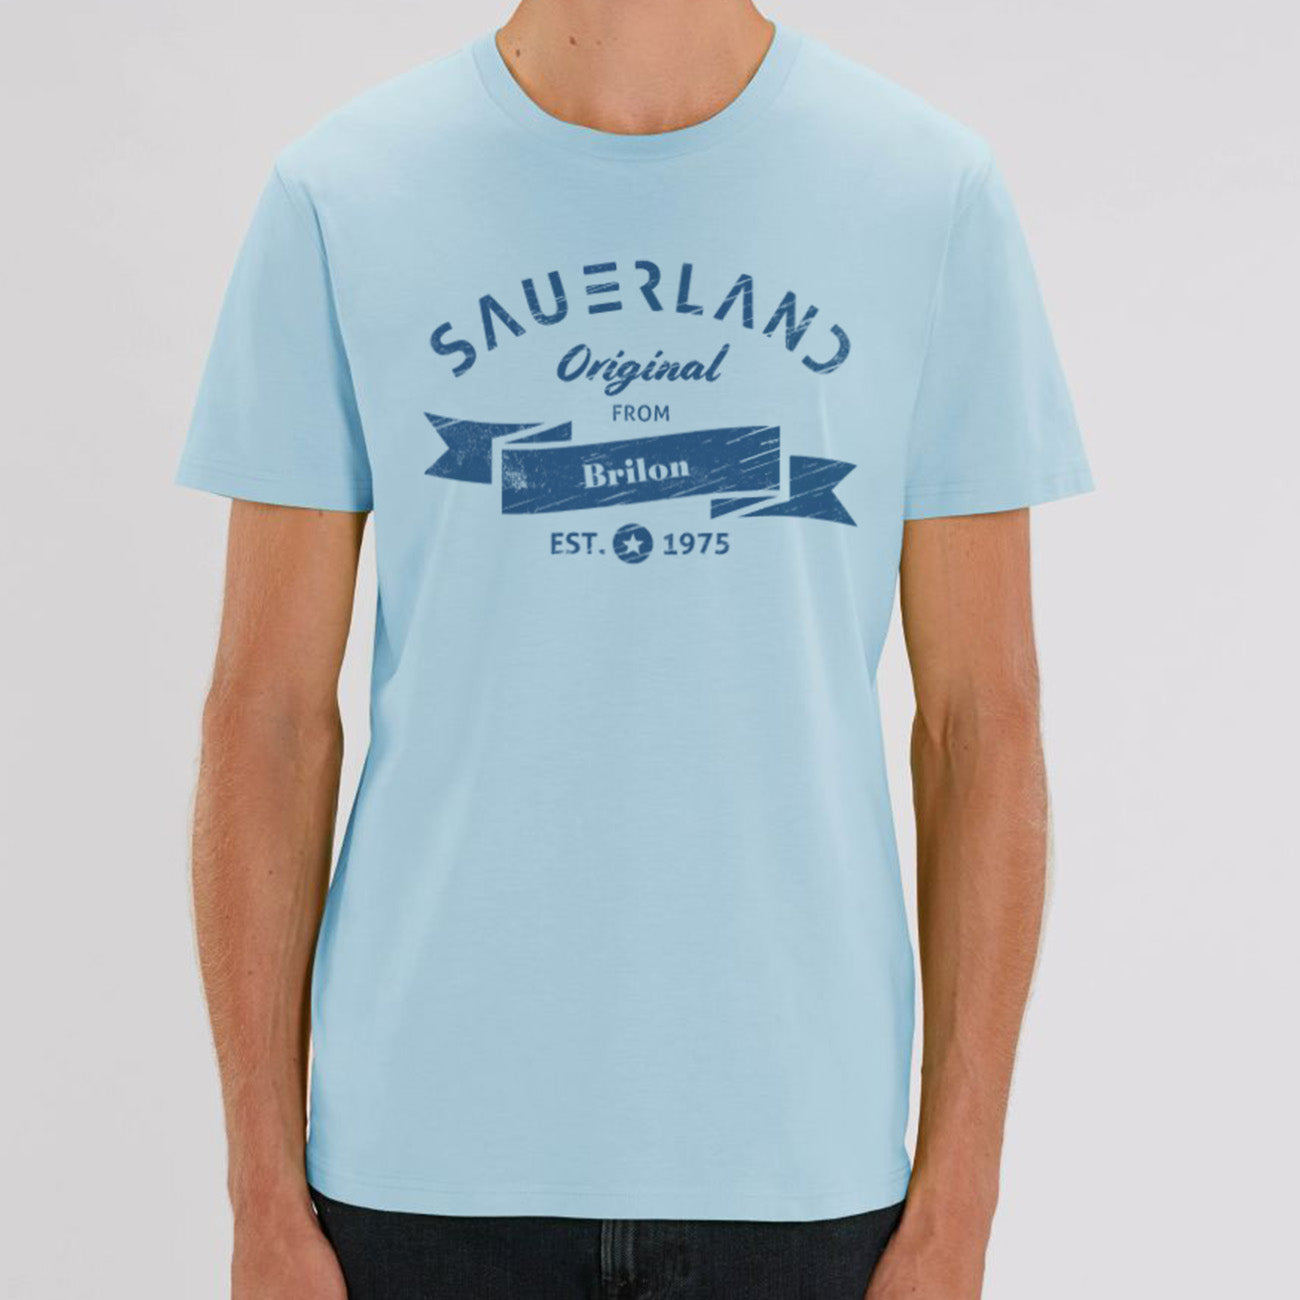 Sauerland T-Shirt in hellblau mit Aufdruck Sauerland Original from Brilon